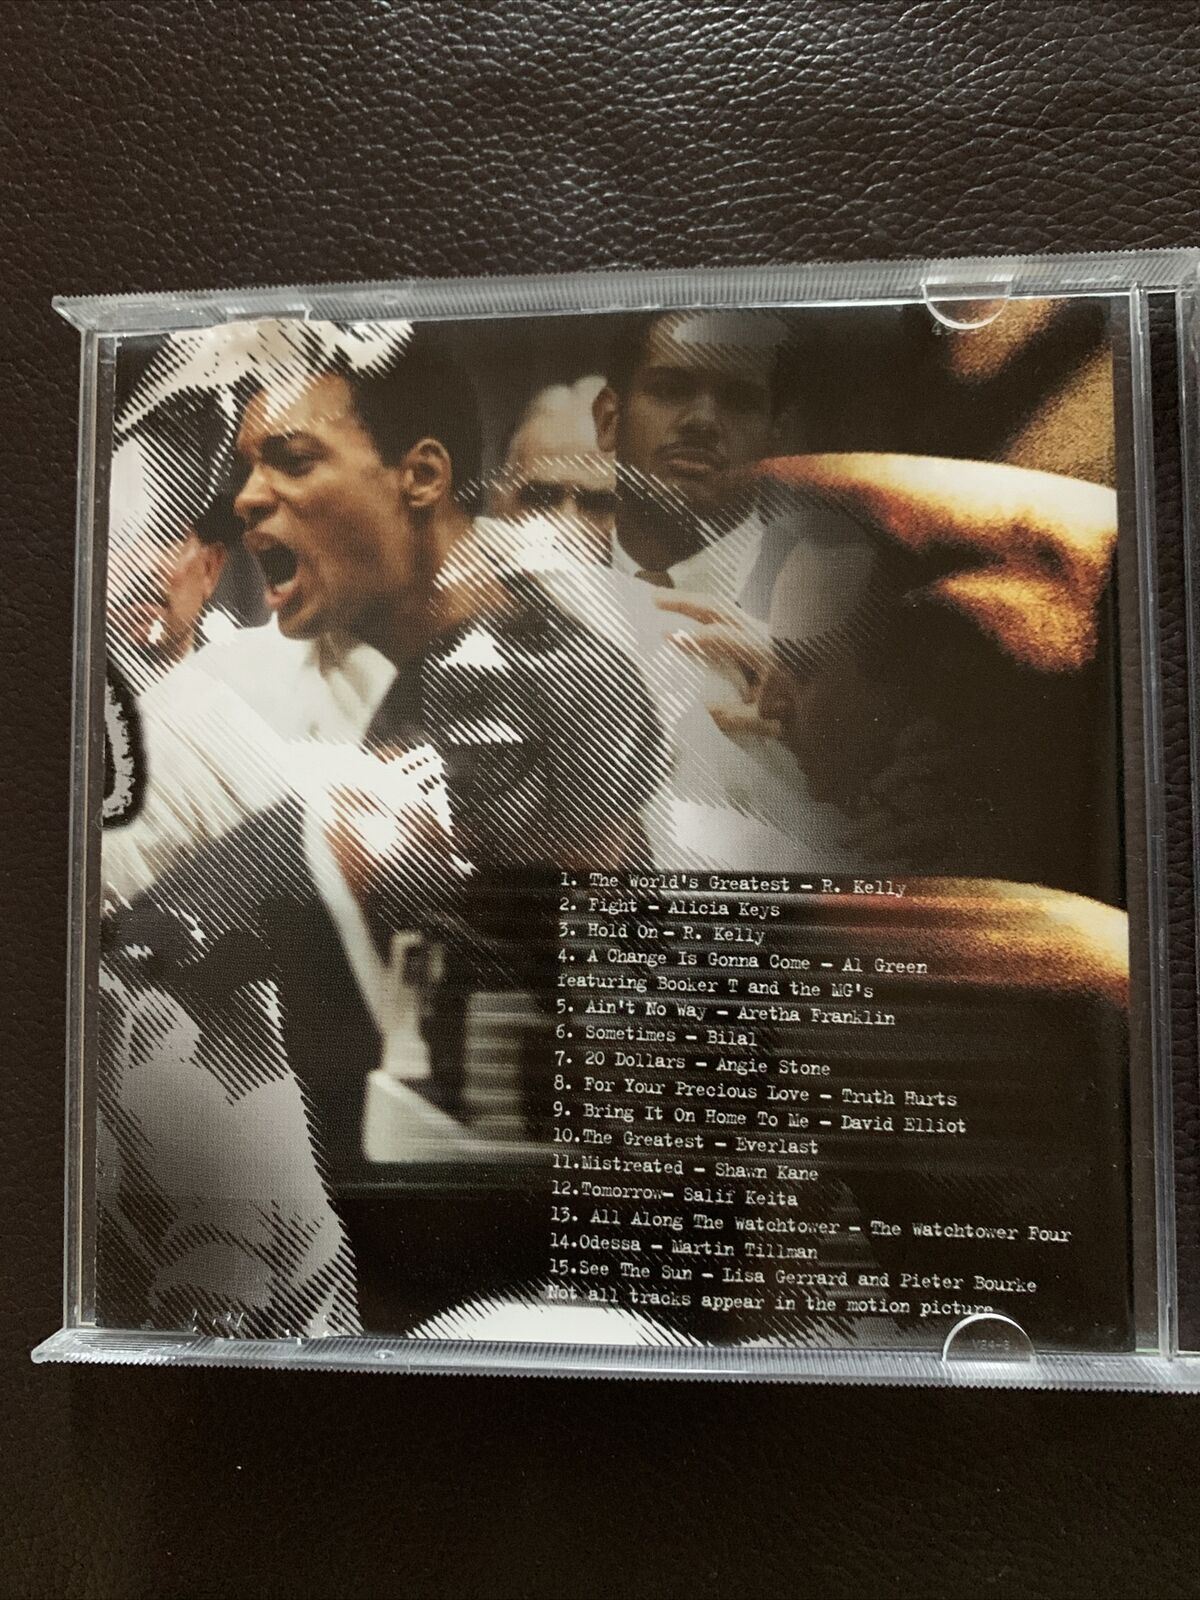 Ali [Original Soundtrack] by Original Film Soundtrack (CD, Nov-2001)